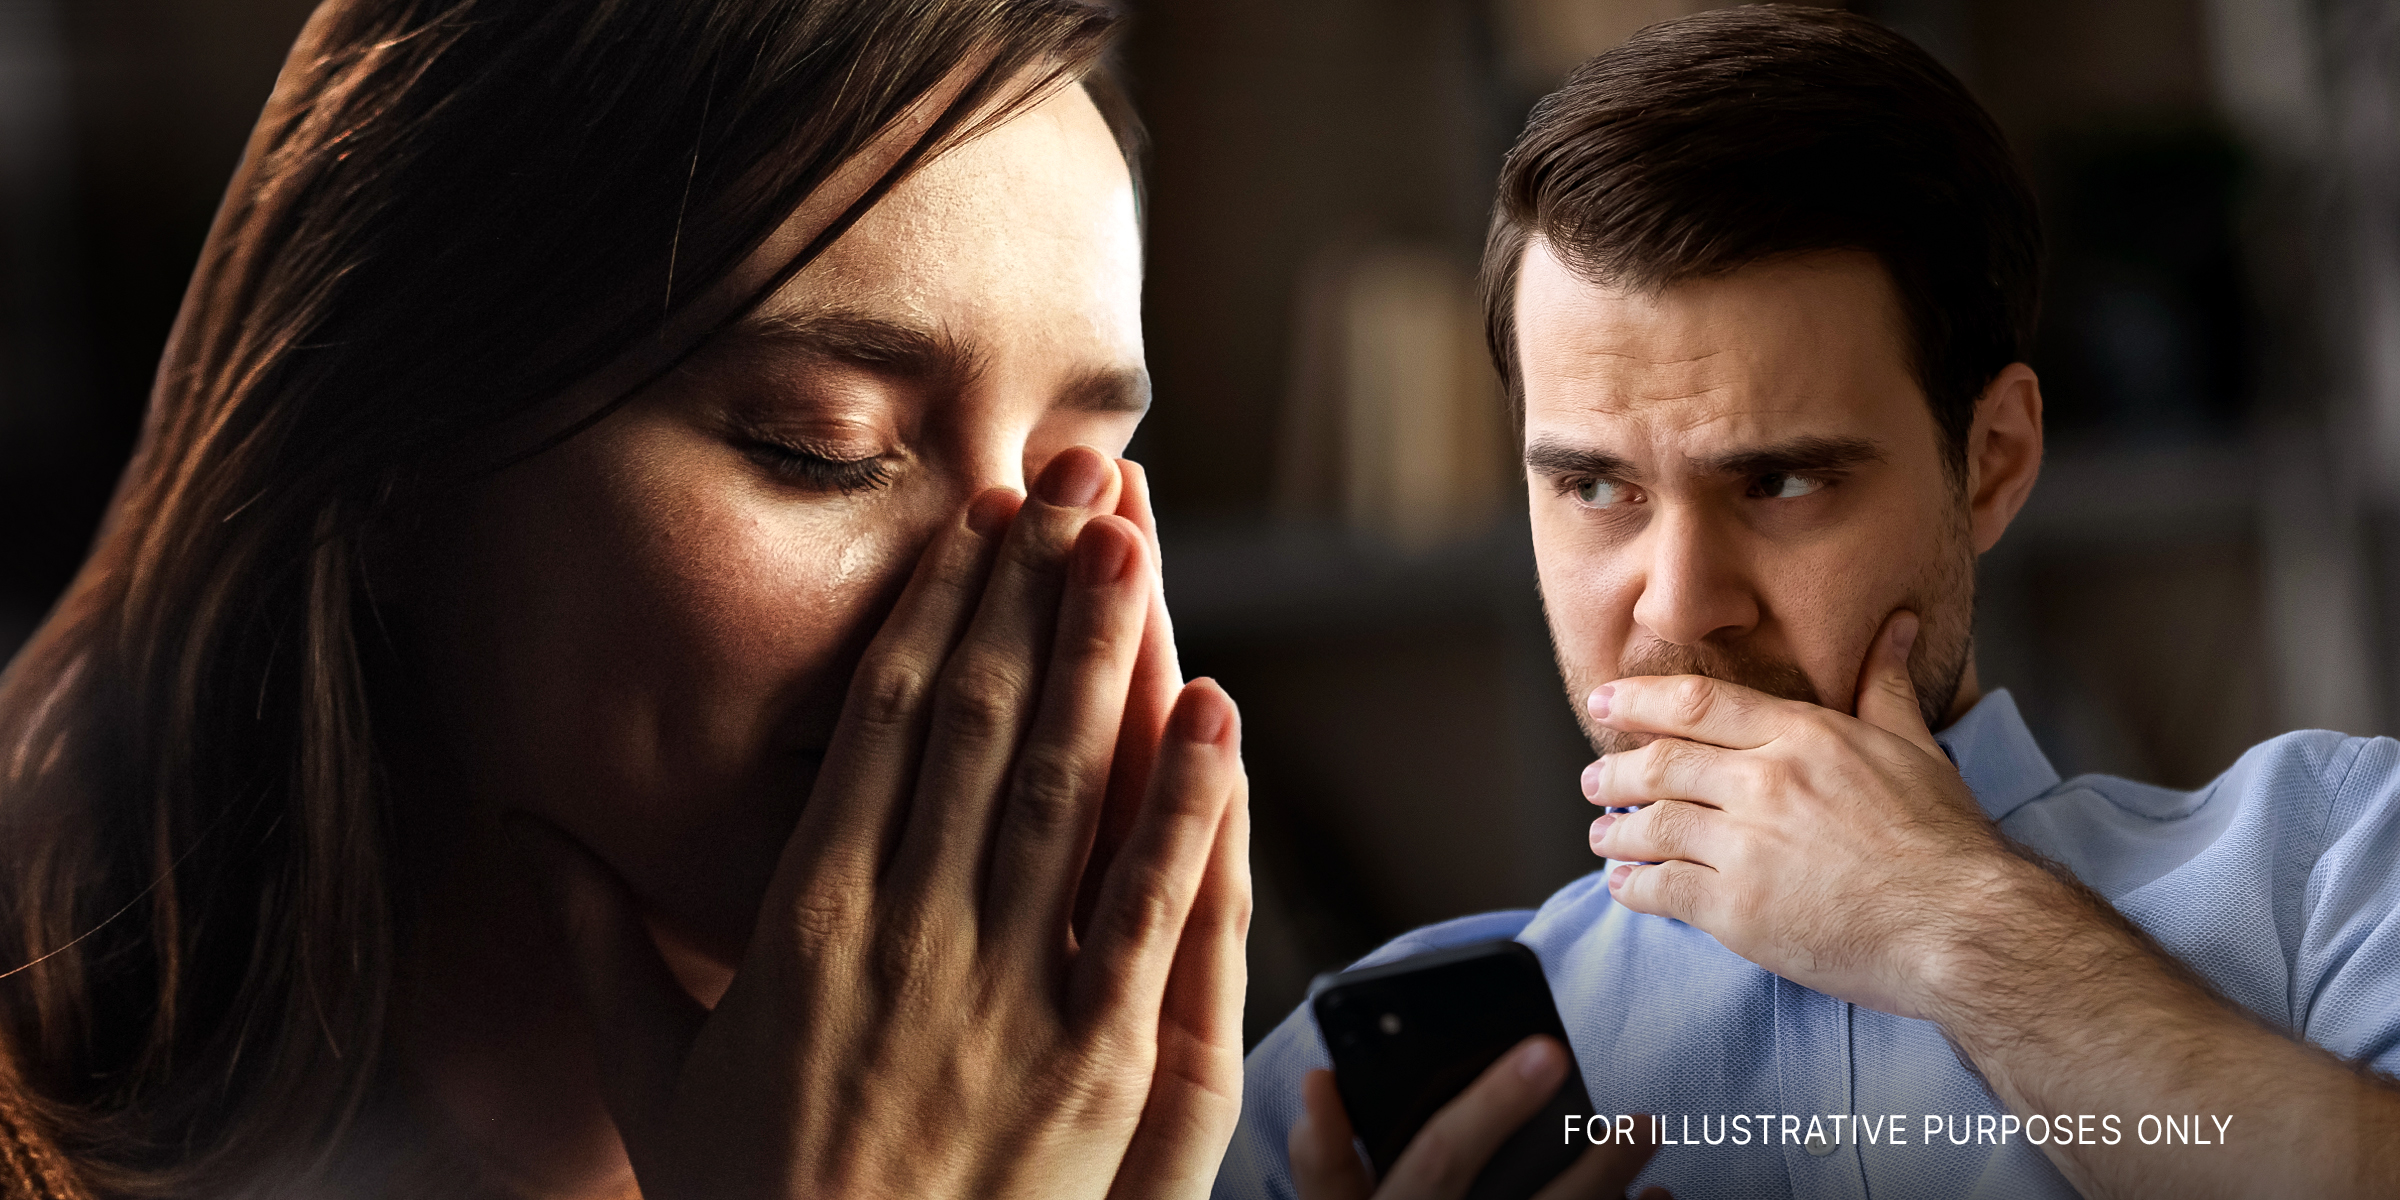 Teary-eyed woman | Worried man | Source: Shutterstock